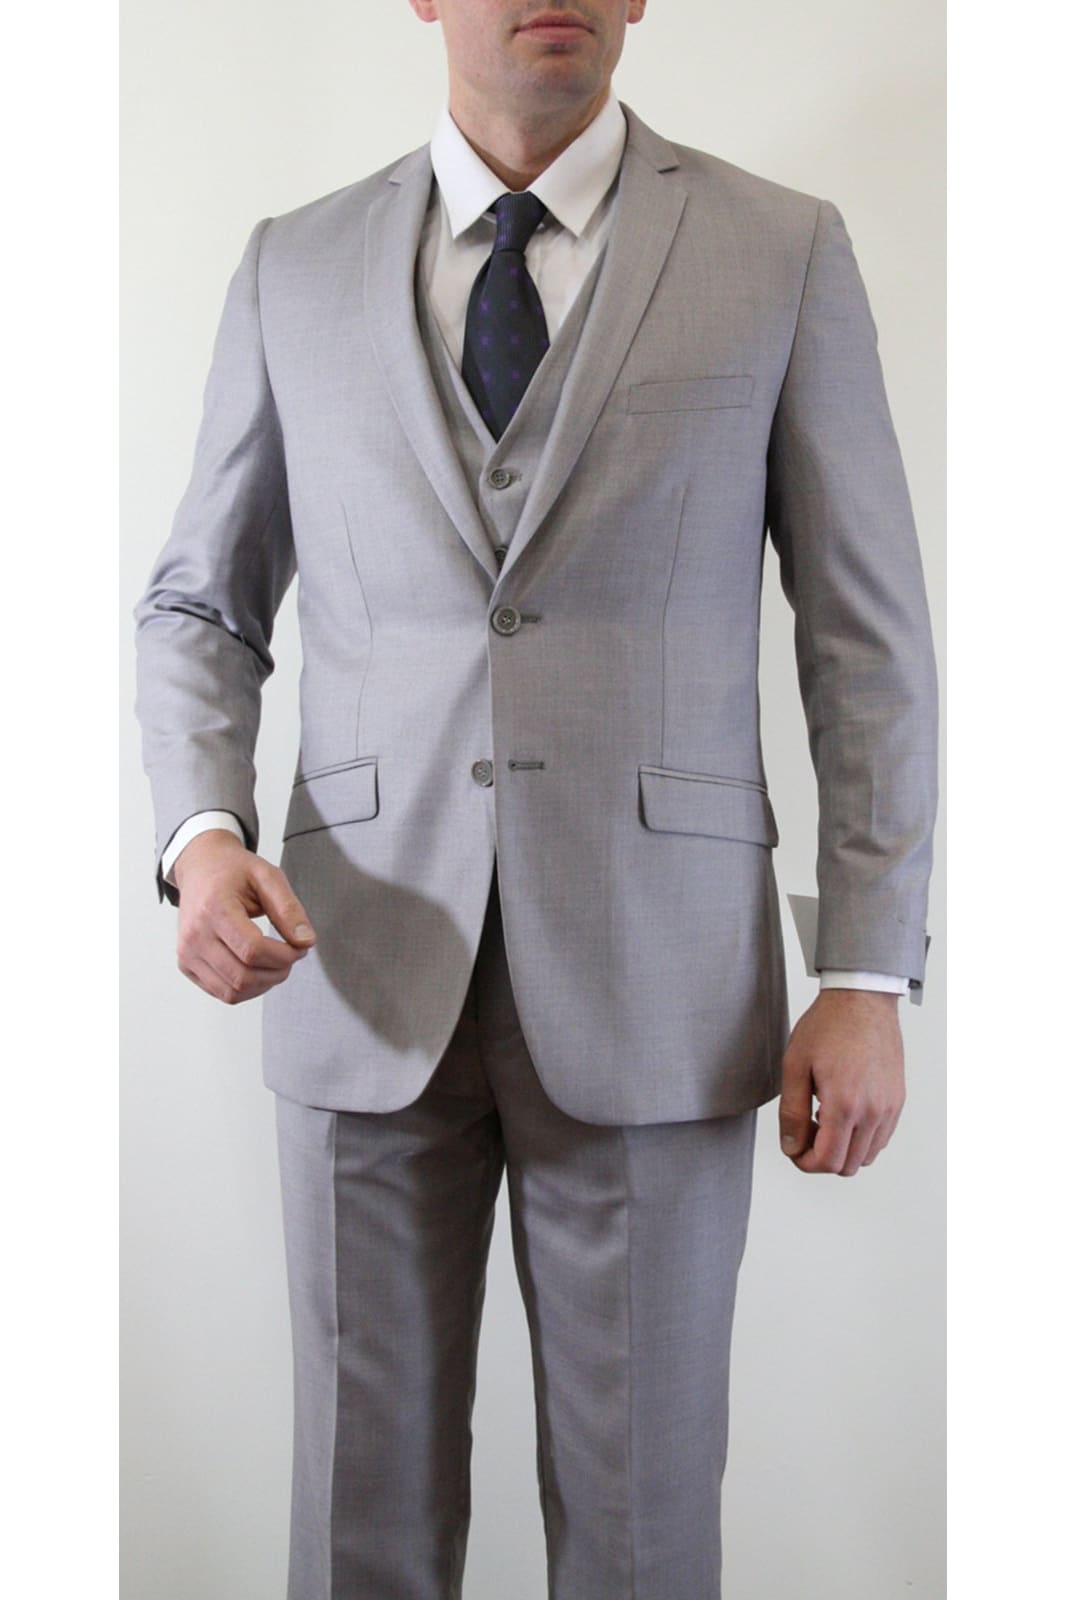 Ultra Slim Fit 3 Piece Men's Suit - LA154SA - LIGHT GREY - Mens Suits LA Merchandise